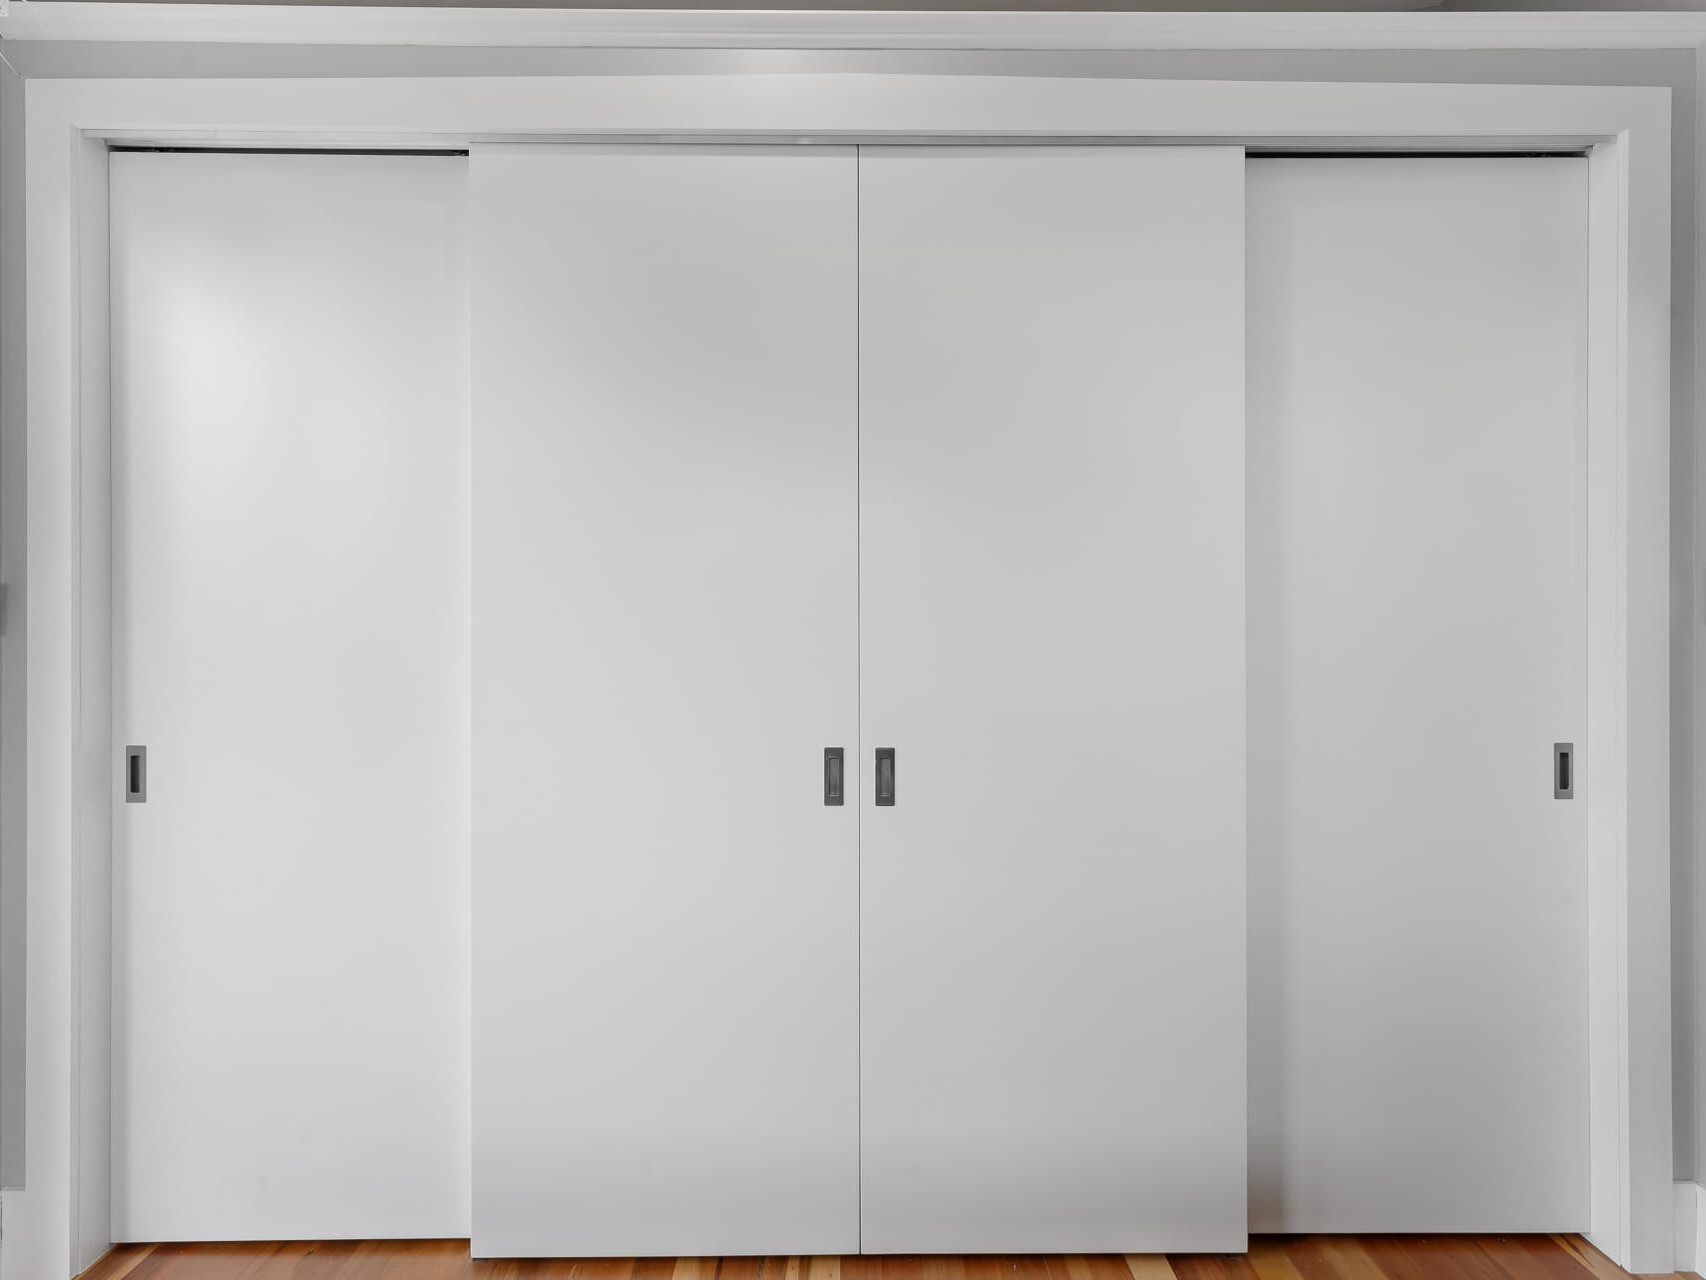 Flush Panel sliding wardrobe doors in white